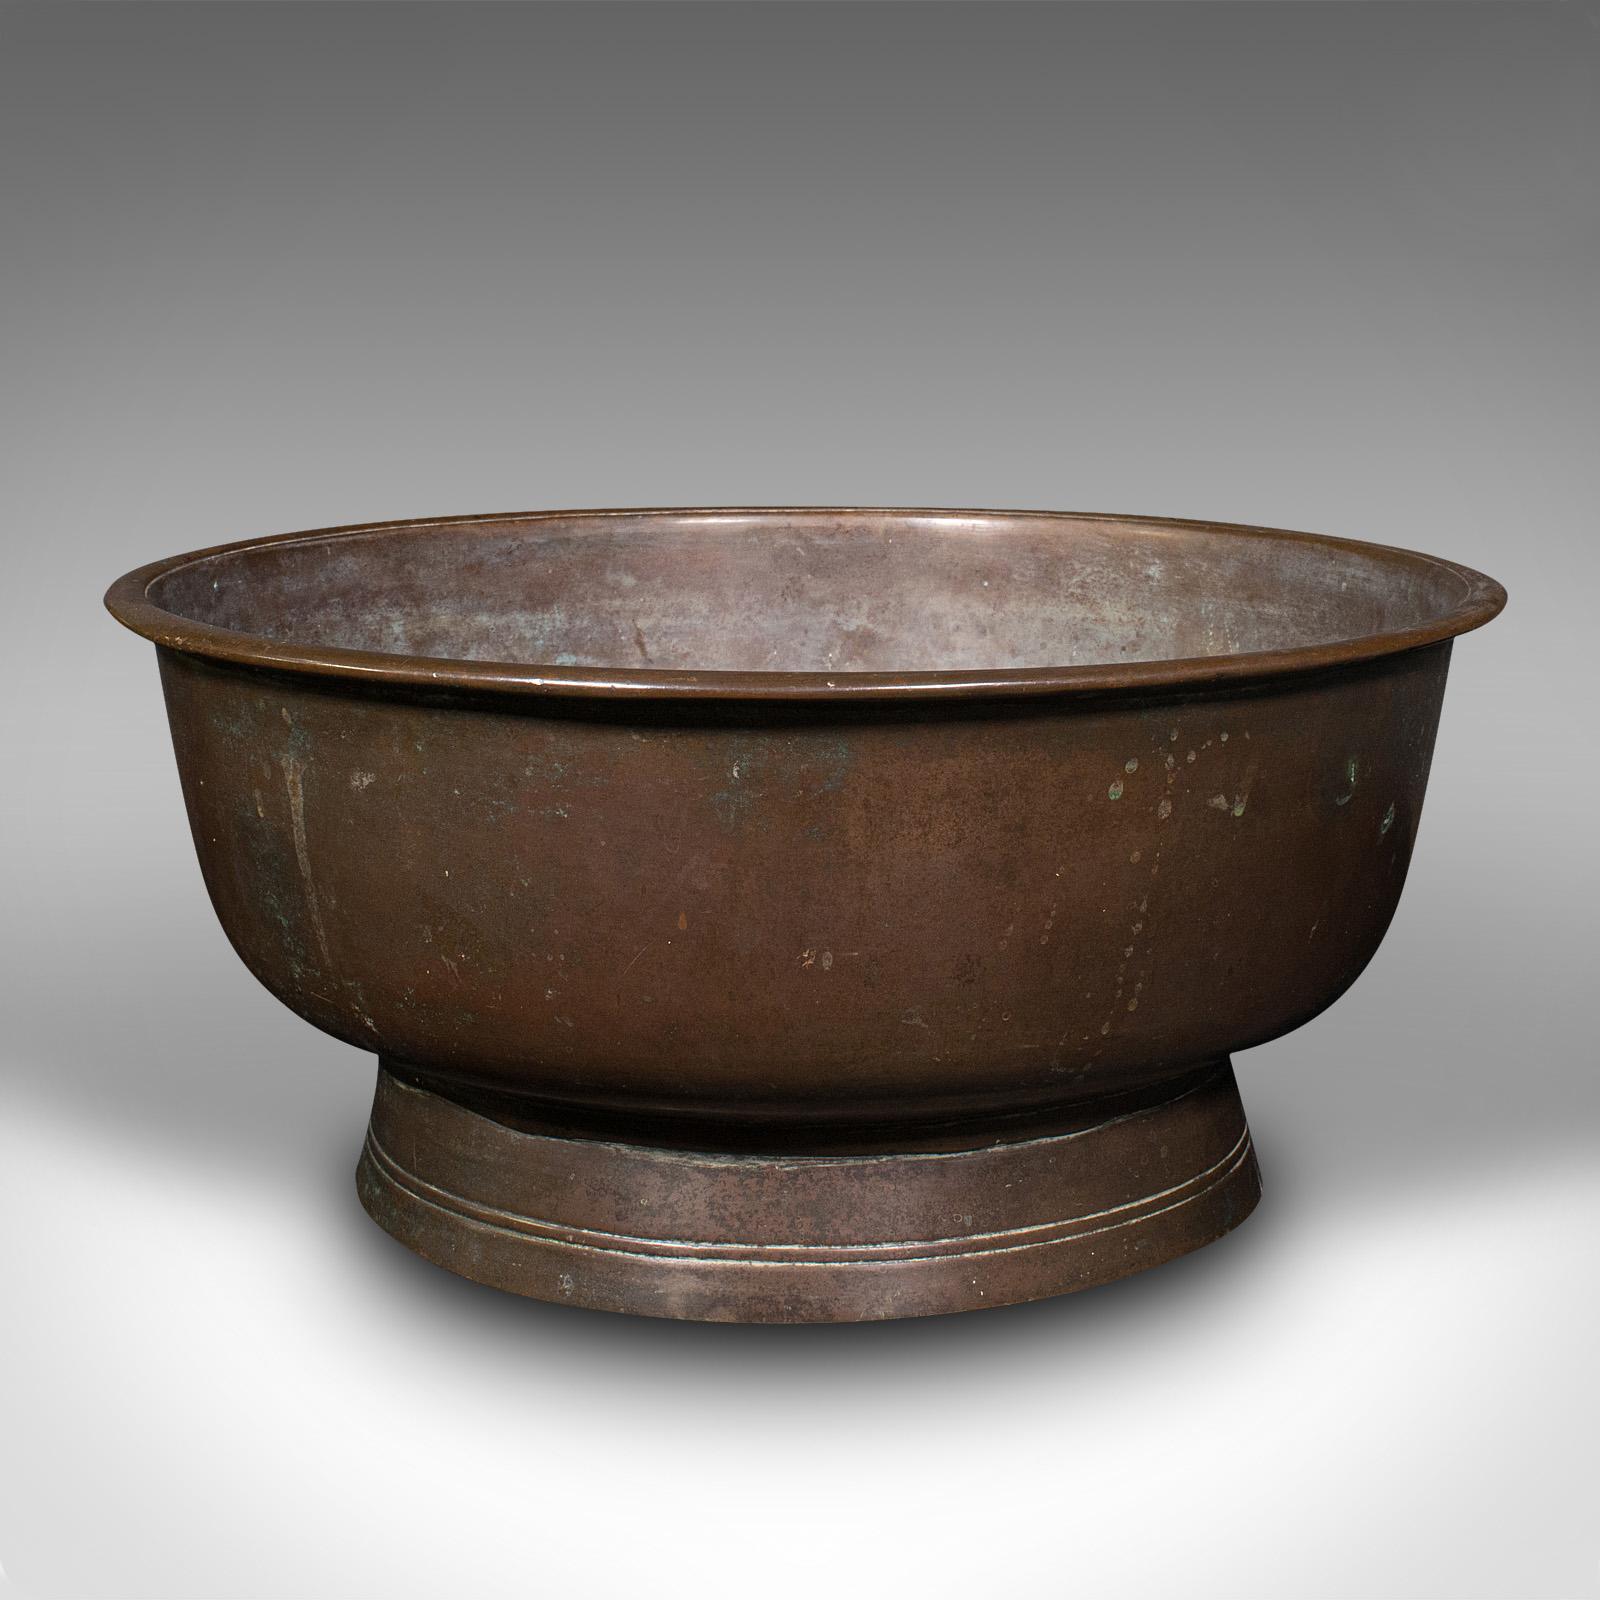 Il s'agit d'un grand encensoir ancien. Bol ou plat de service japonais en bronze, datant de la fin de la période victorienne, vers 1900.

L'intérieur merveilleusement patiné ajoute une fine distinction
Présente une patine vieillie souhaitable sur